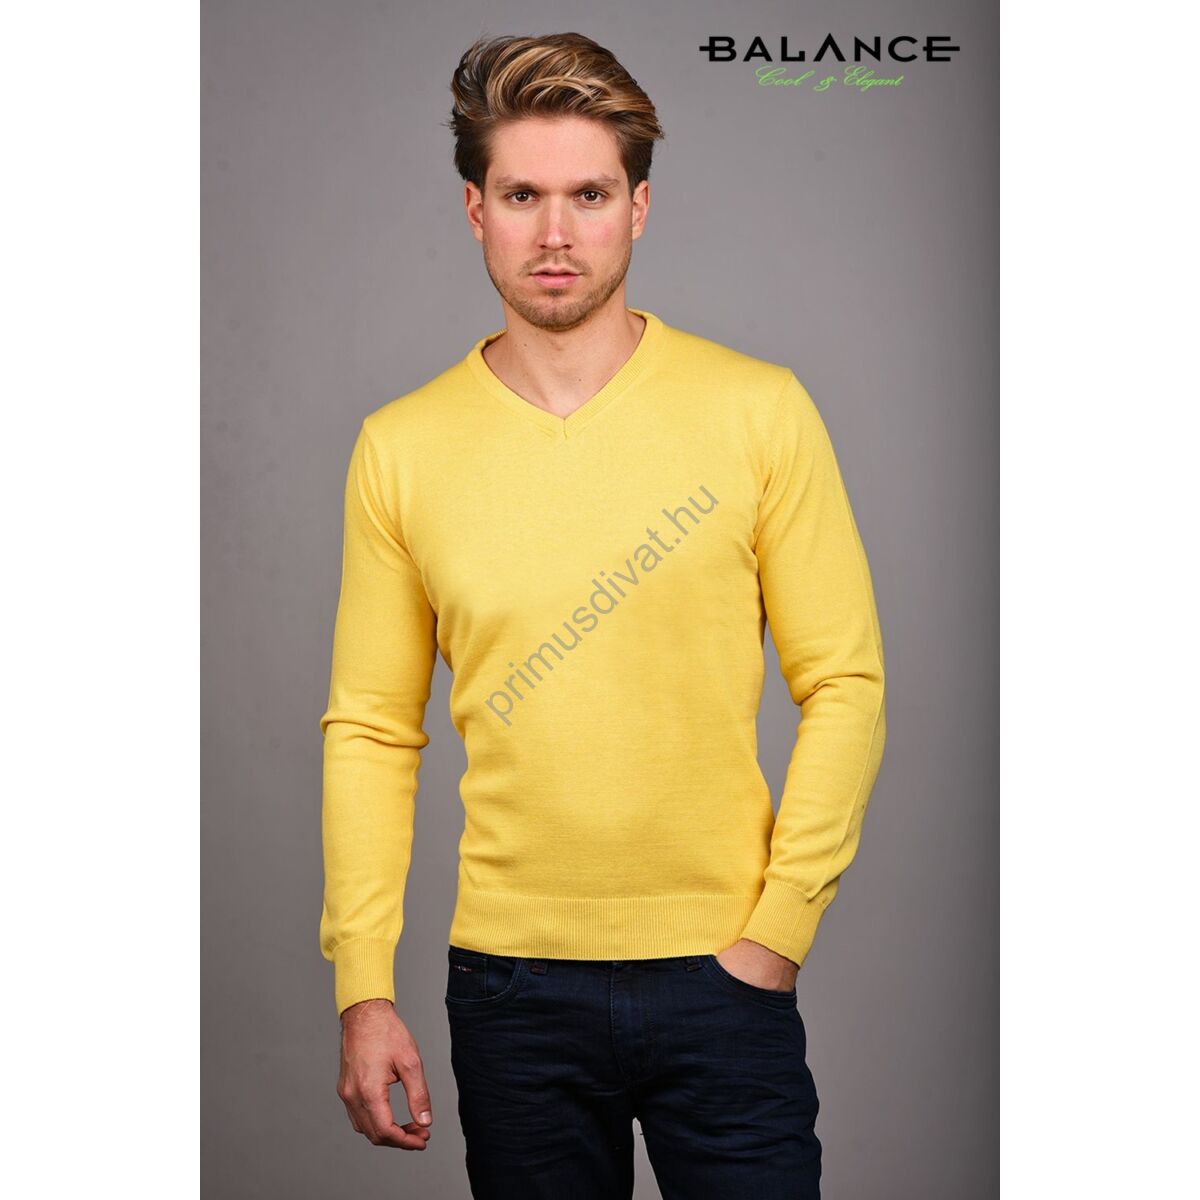 Balance vékony kötött V-nyakú pamut pulóver, sárga-melange